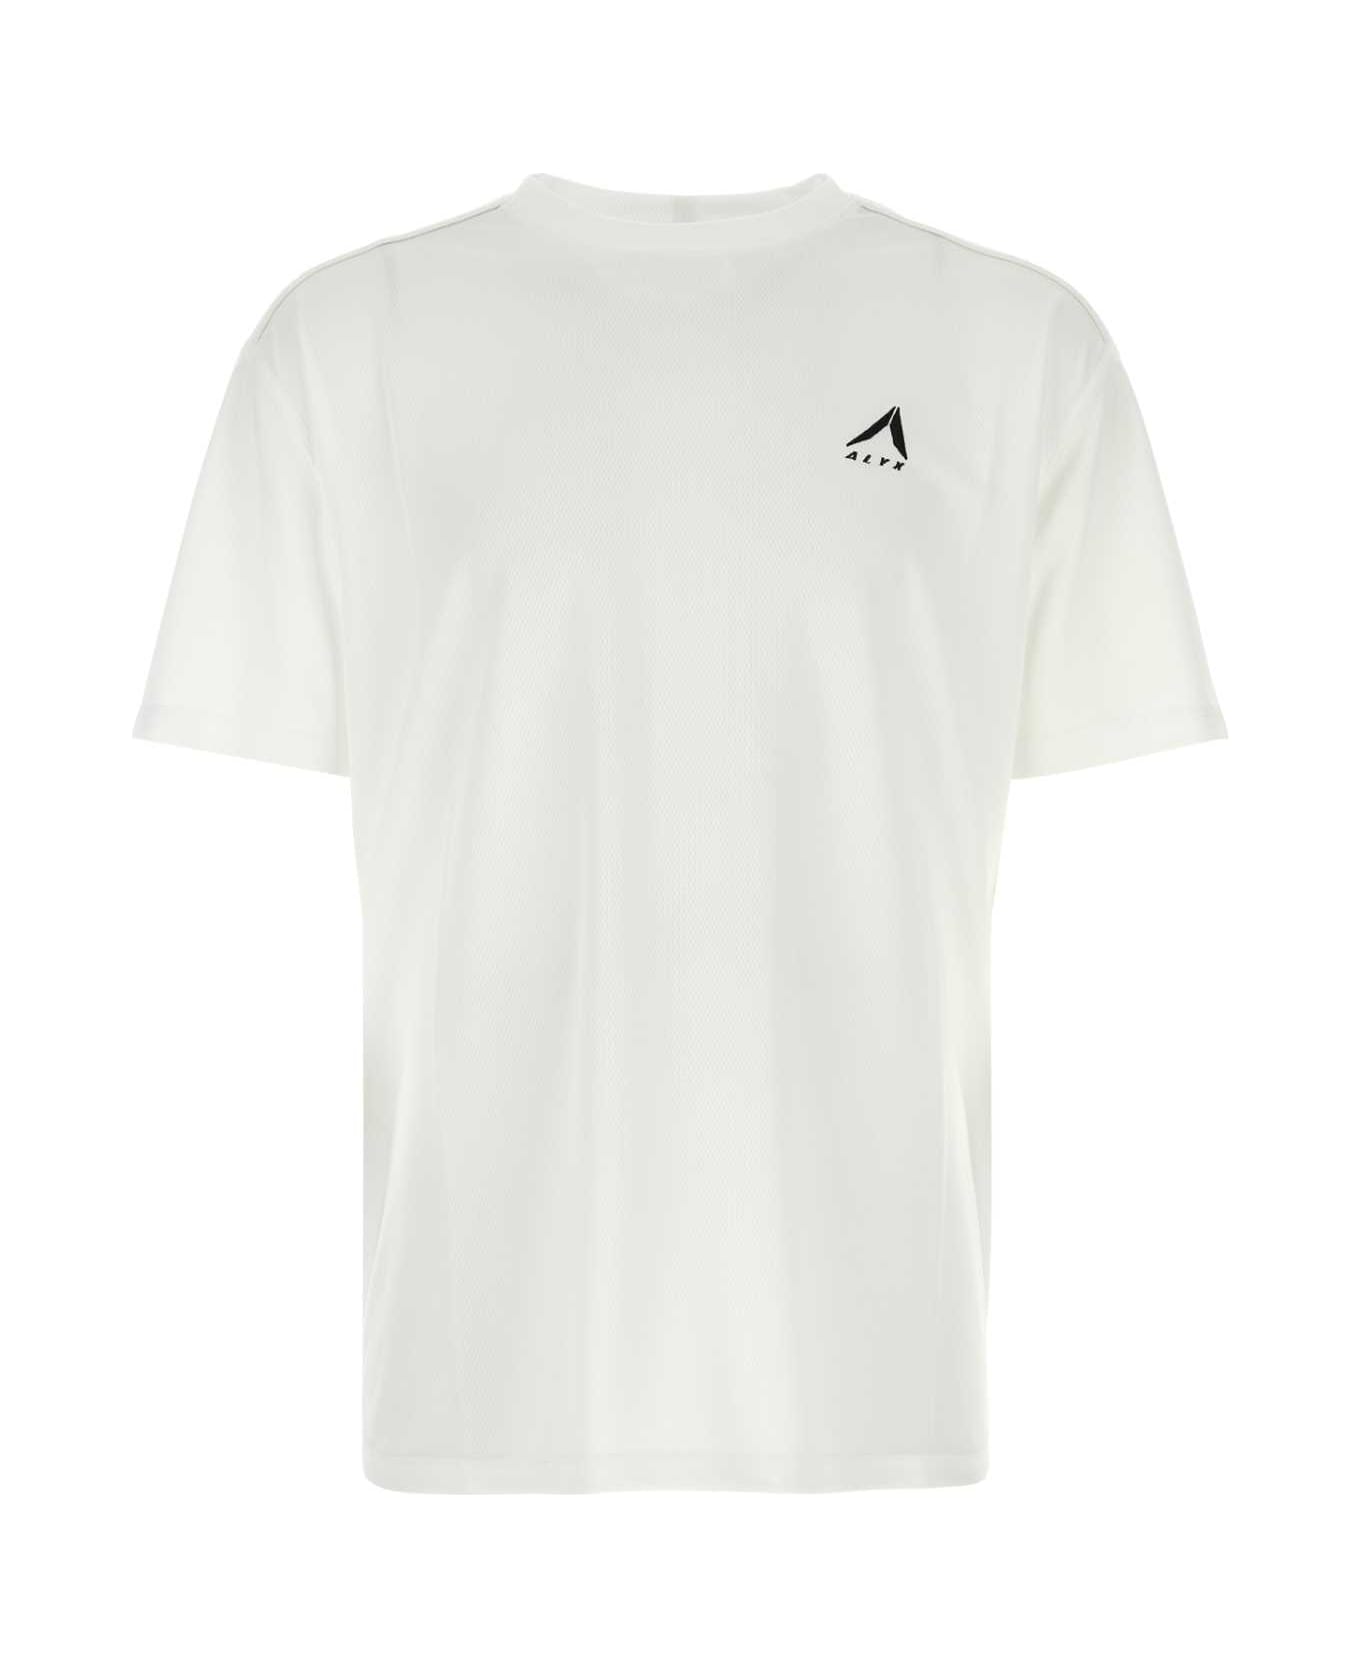 1017 ALYX 9SM White Mesh T-shirt - WHITE シャツ